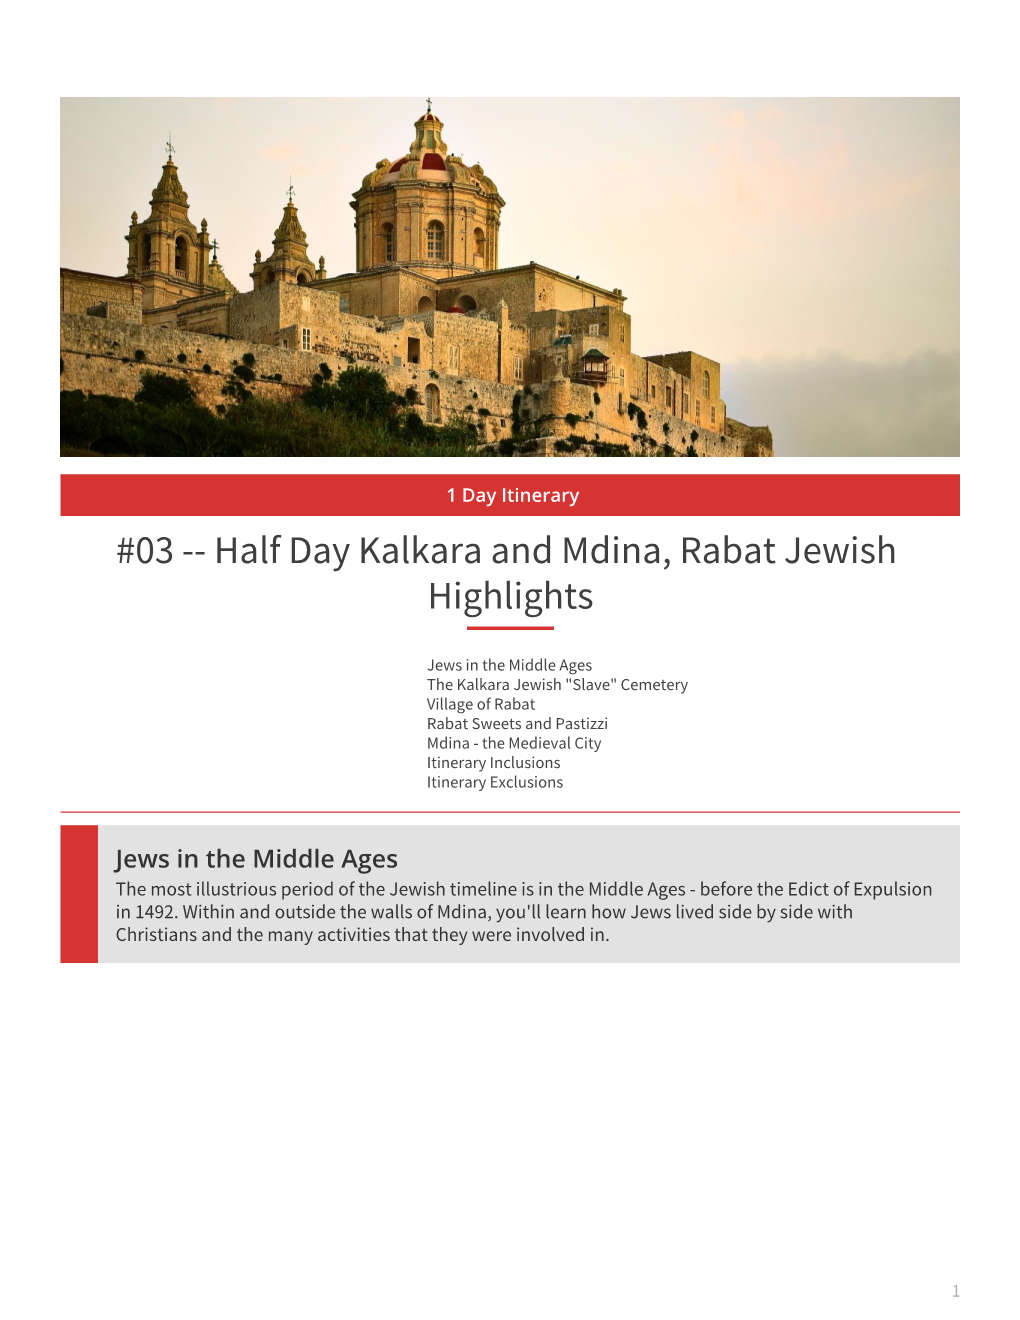 Half Day Kalkara and Mdina, Rabat Jewish Highlights